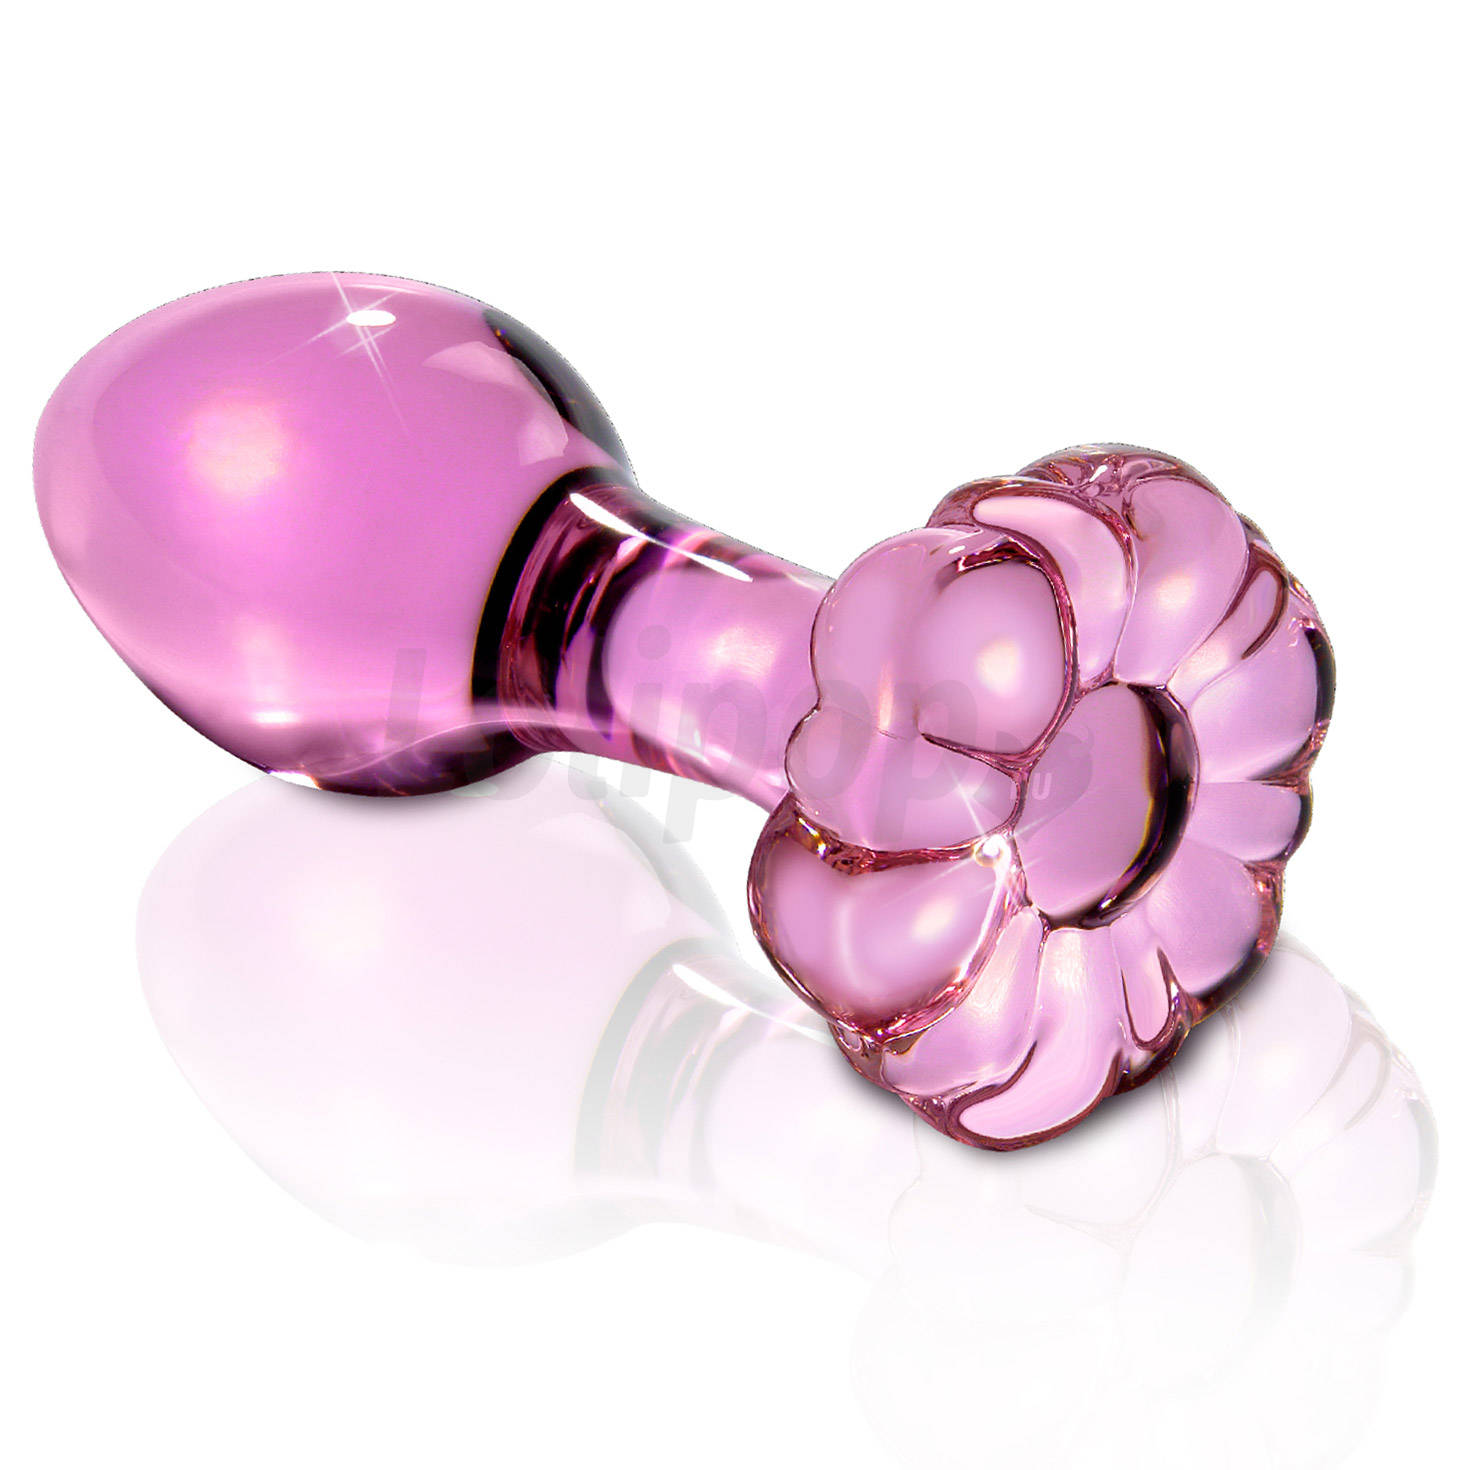 Icicles No. 48 - virágos üveg anál kúp (pink)